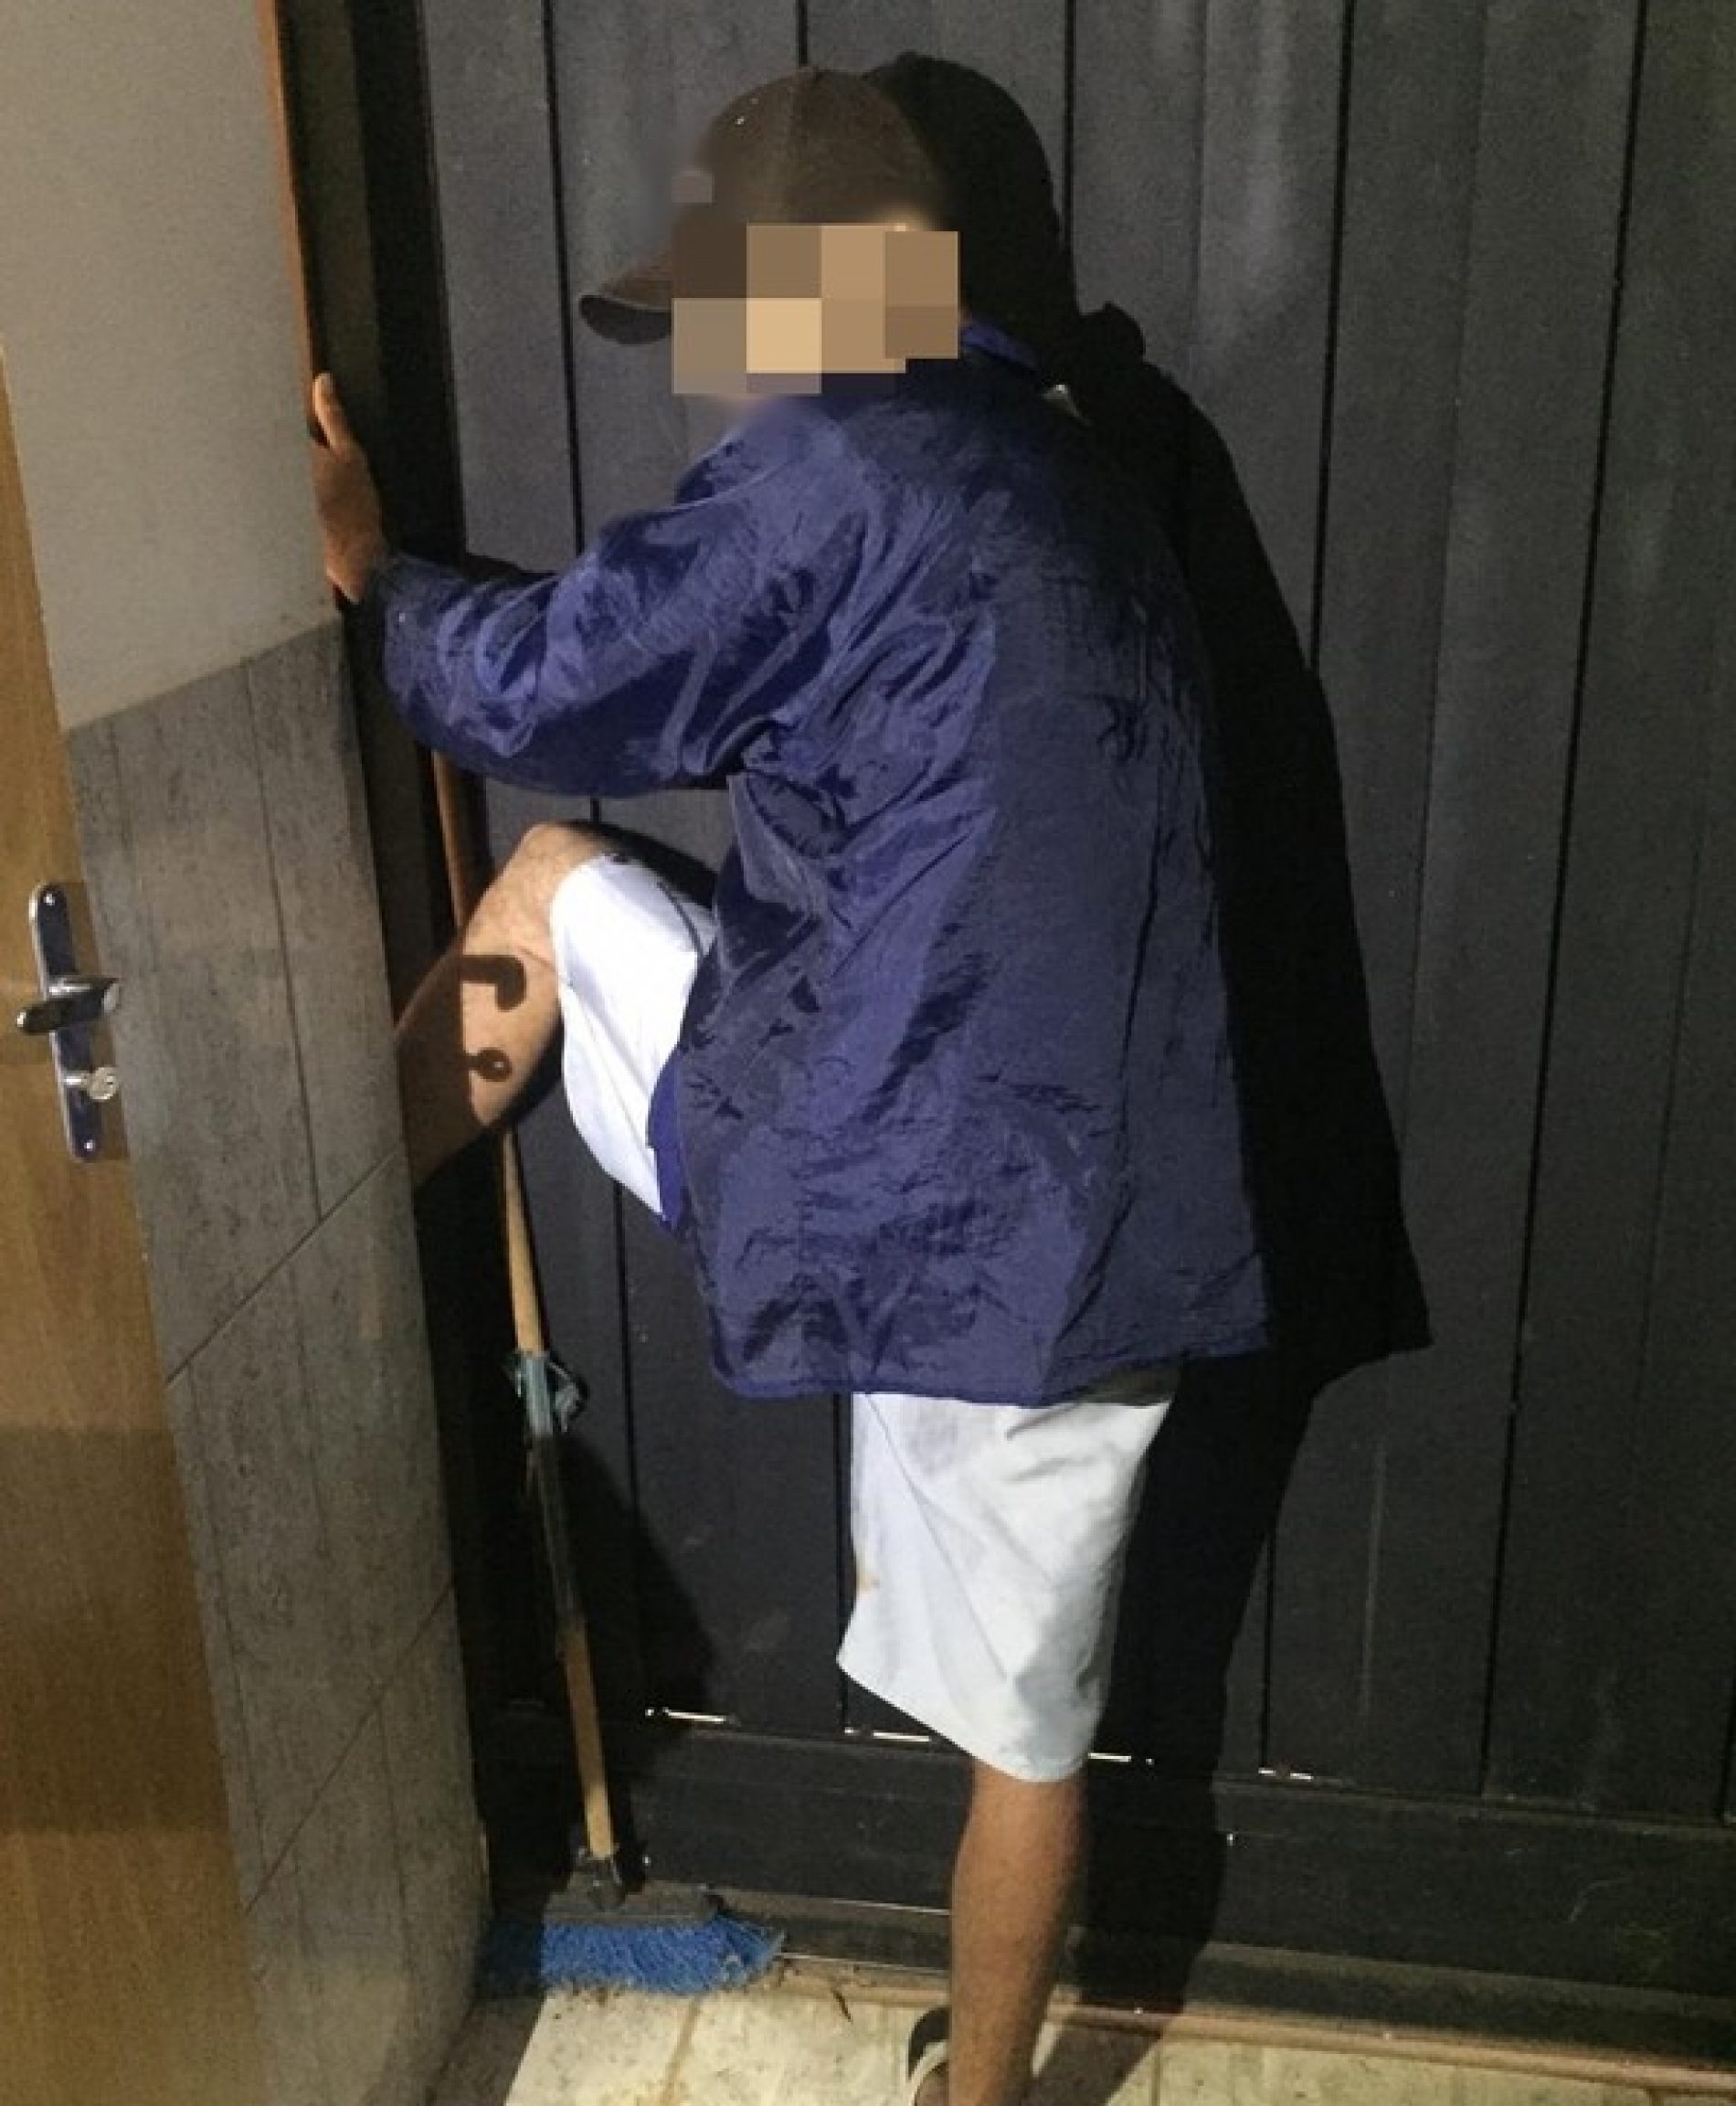 OLÍMPIA: Homem fica com pé preso em porta ao tentar furtar empresa